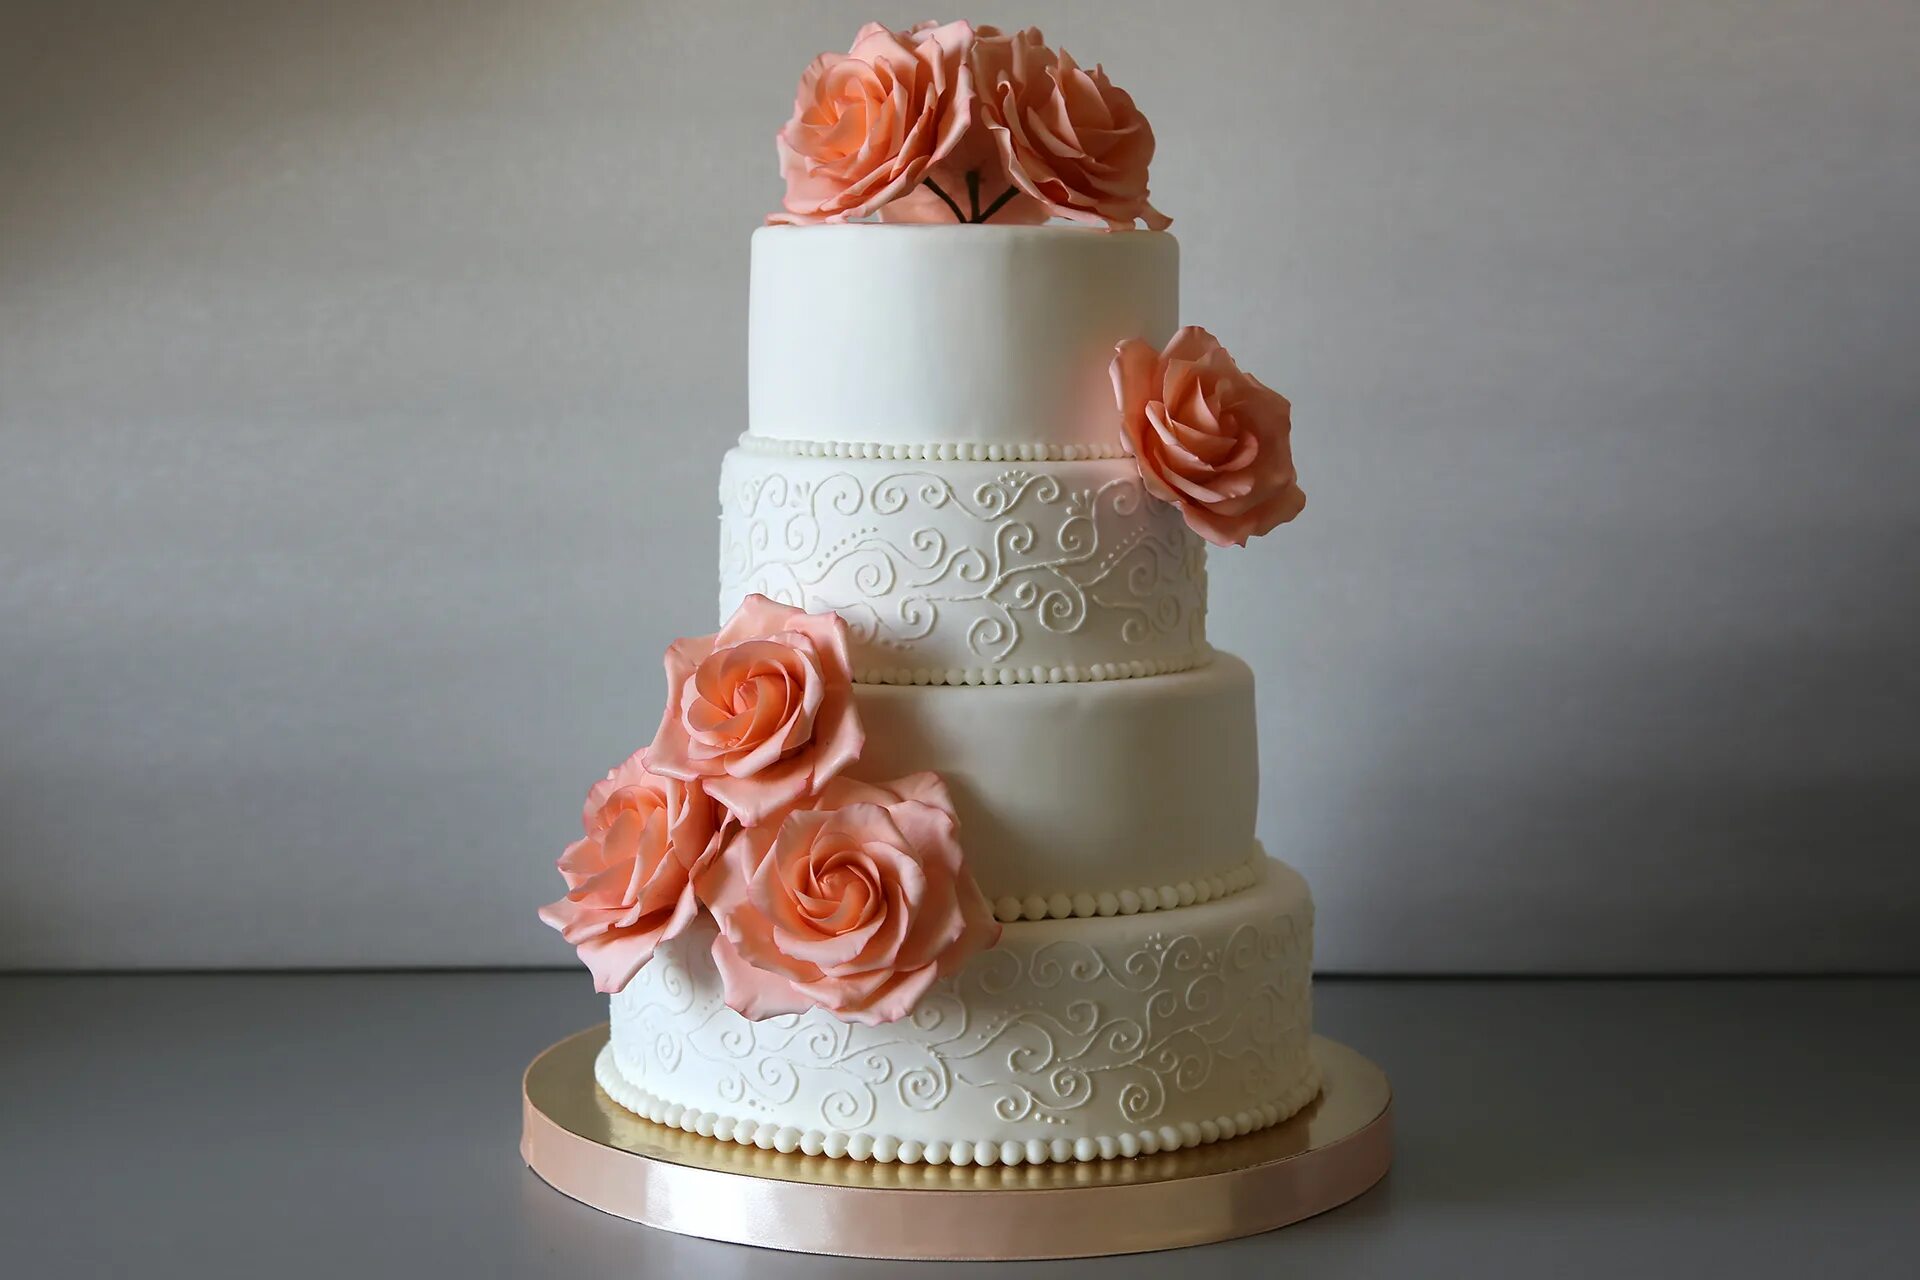 Тортабелла. Свадебный трехъярусный персикового цвета торт. Торт в персиковом цвете на свадьбу 20023. Свадебный торт в персиковом цвете трехъярусный минималистичный. Свадебный торт 8 кг в персиковых тонах.